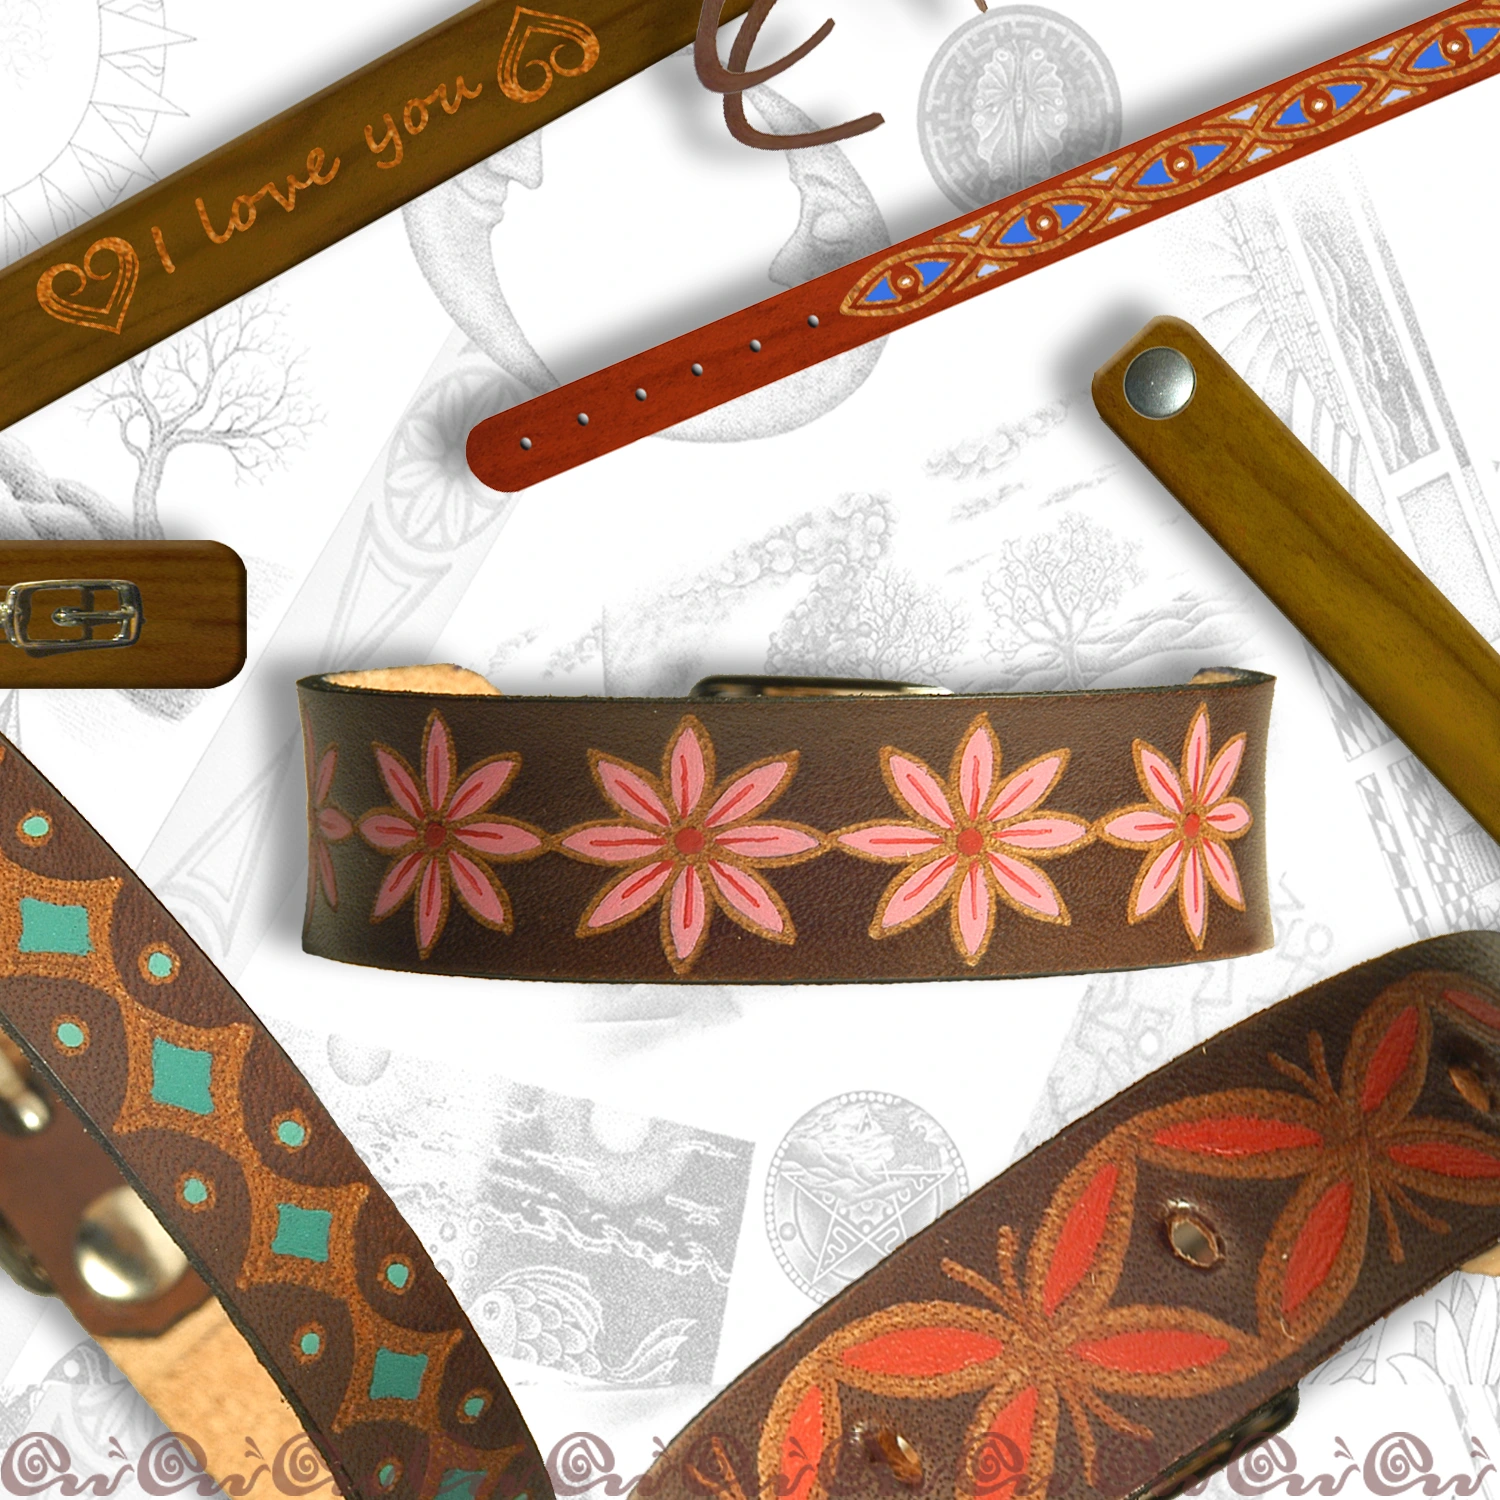 Stile artigianale: braccialetti in cuoio fatti a mano